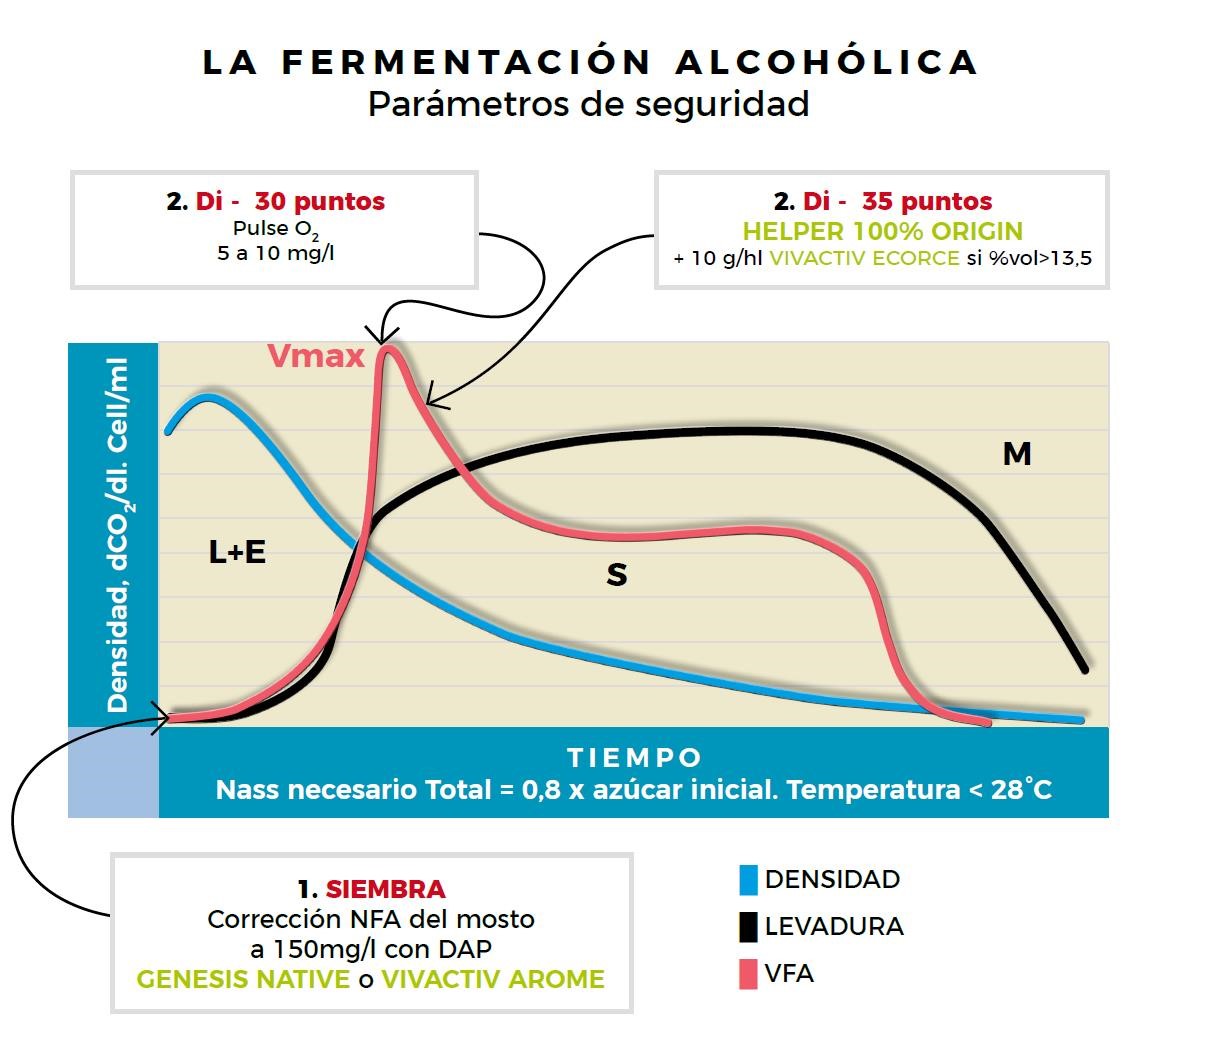 La fermentación alcohólica